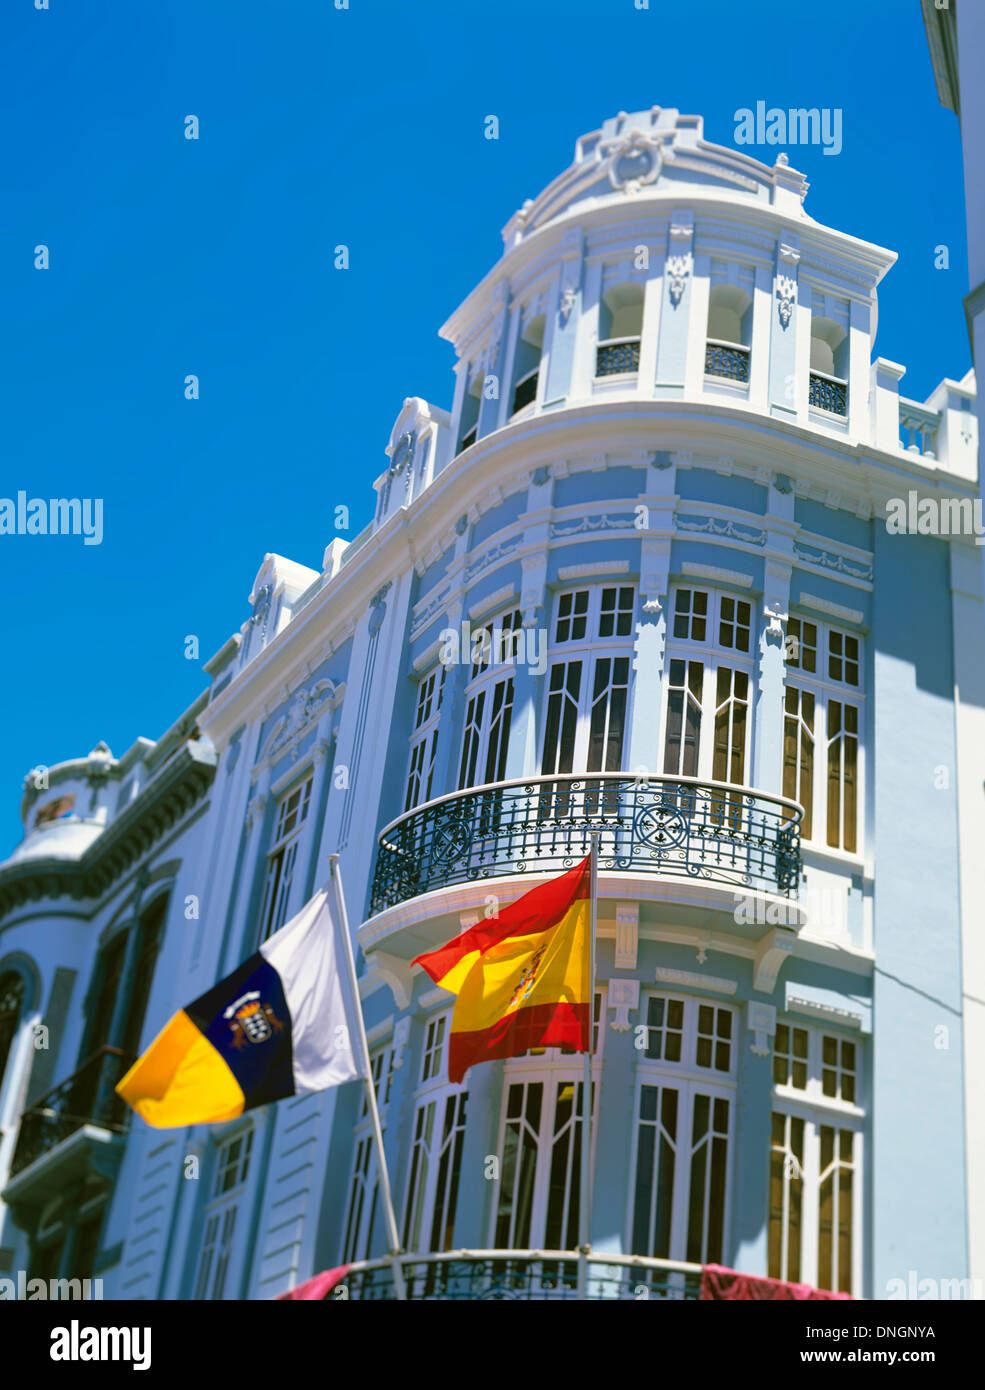 L'architecture municipale en centre-ville battant le pavillon des îles Canaries et l'Espagne, Santa Cruz de Tenerife, Espagne Banque D'Images